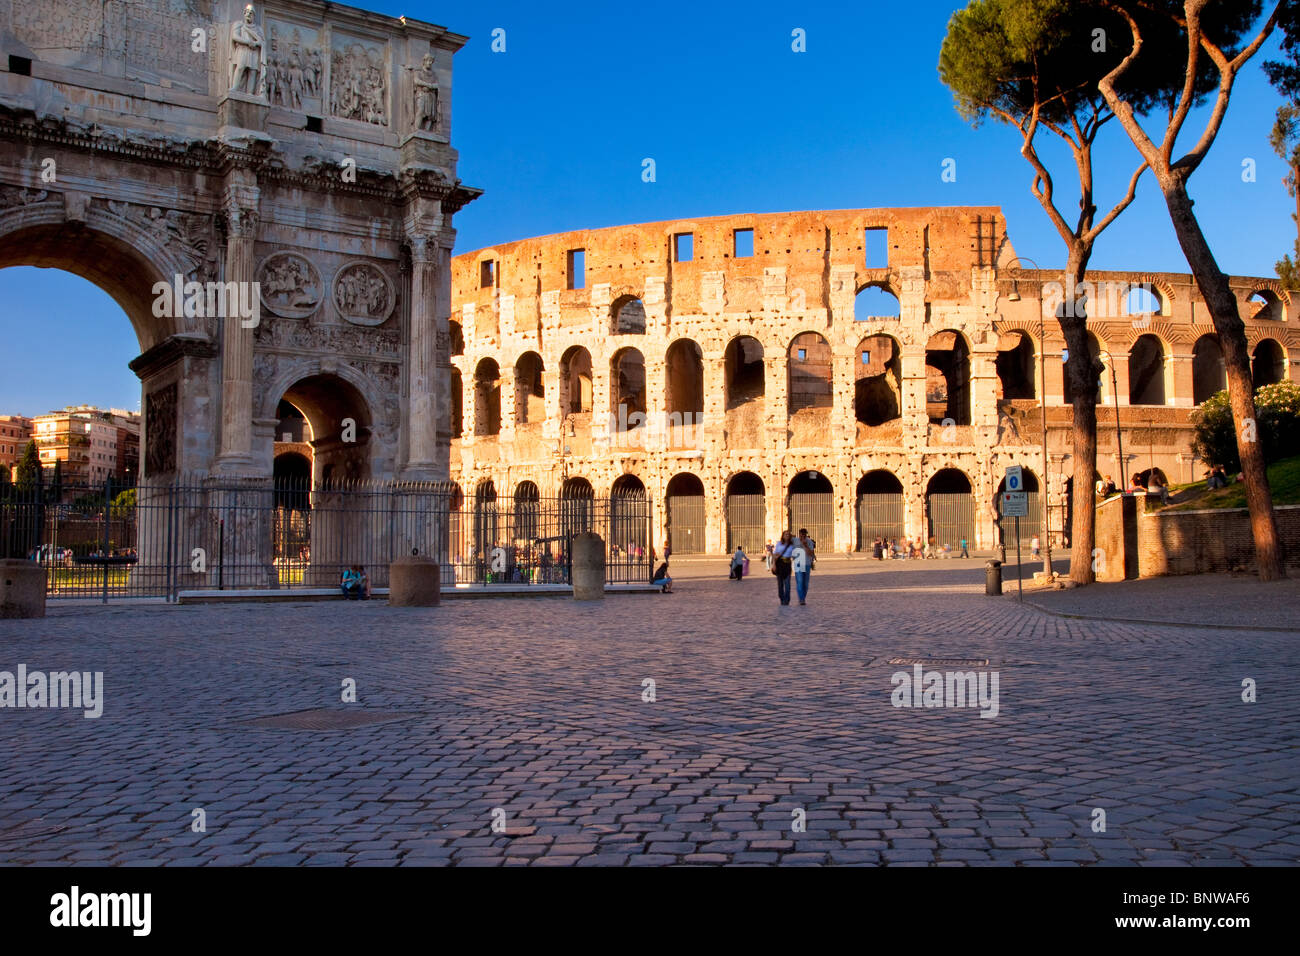 Couple walking the cobblestones near the Roman Coliseum, Rome Lazio Italy Stock Photo